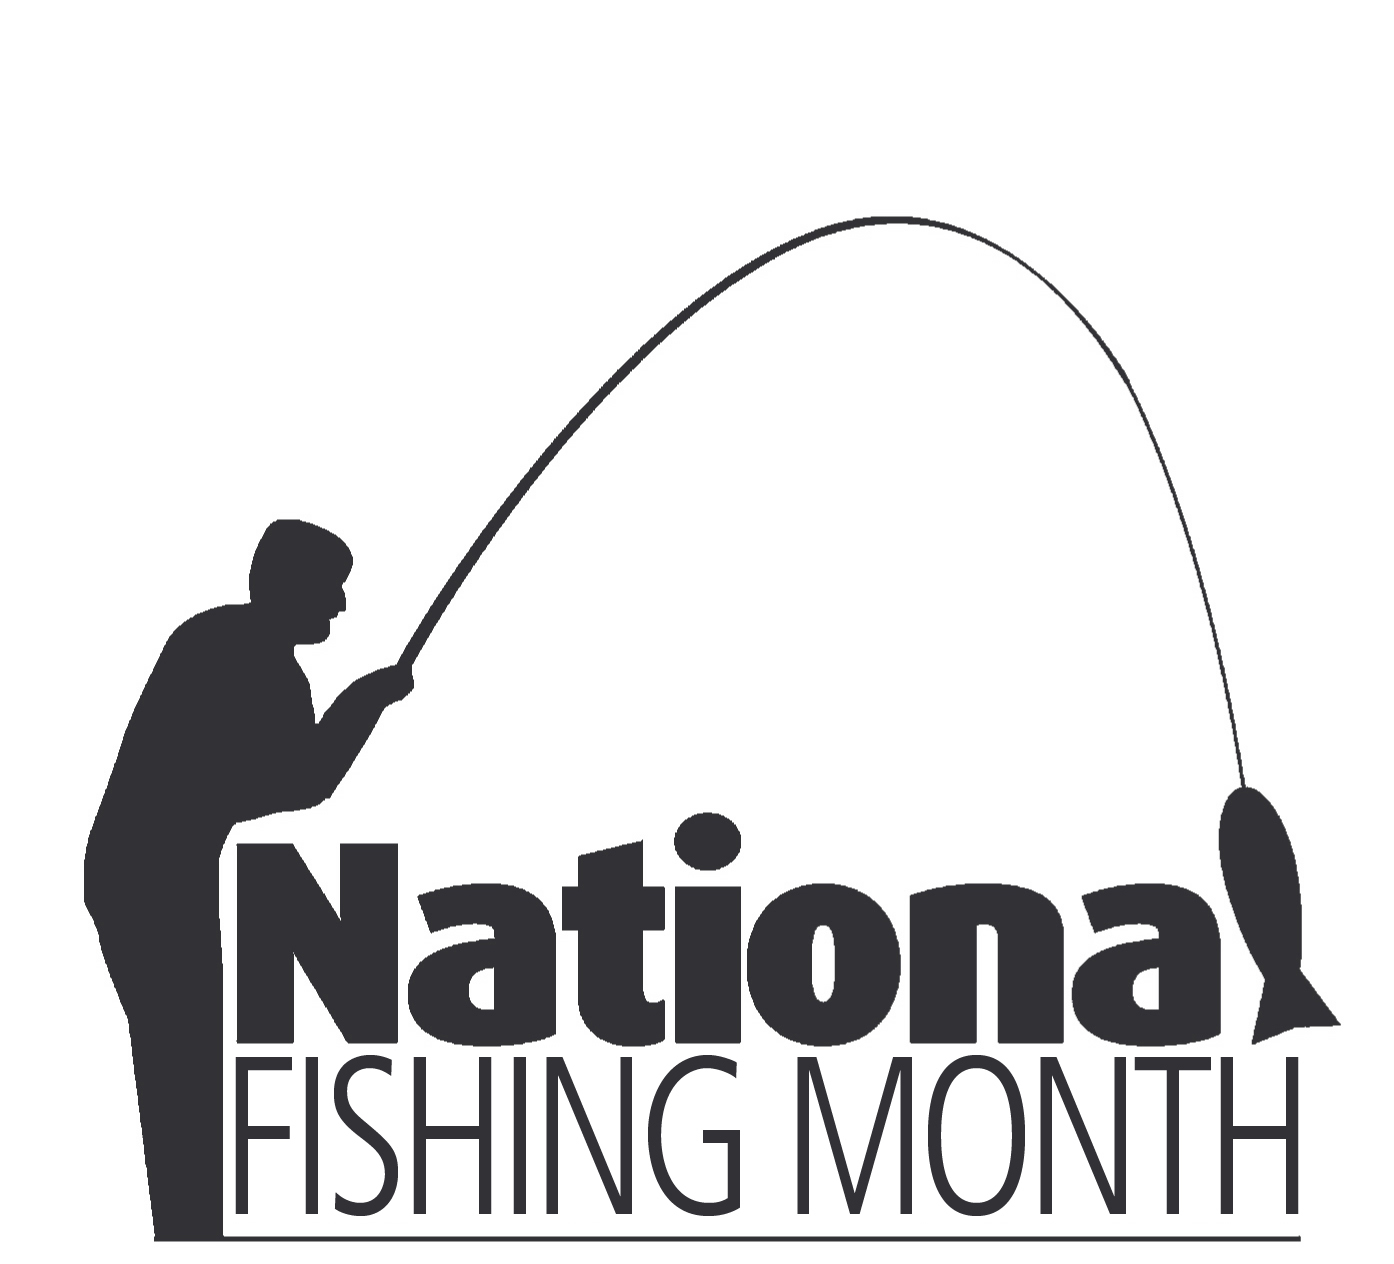 Nat Fishing month logo.jpg